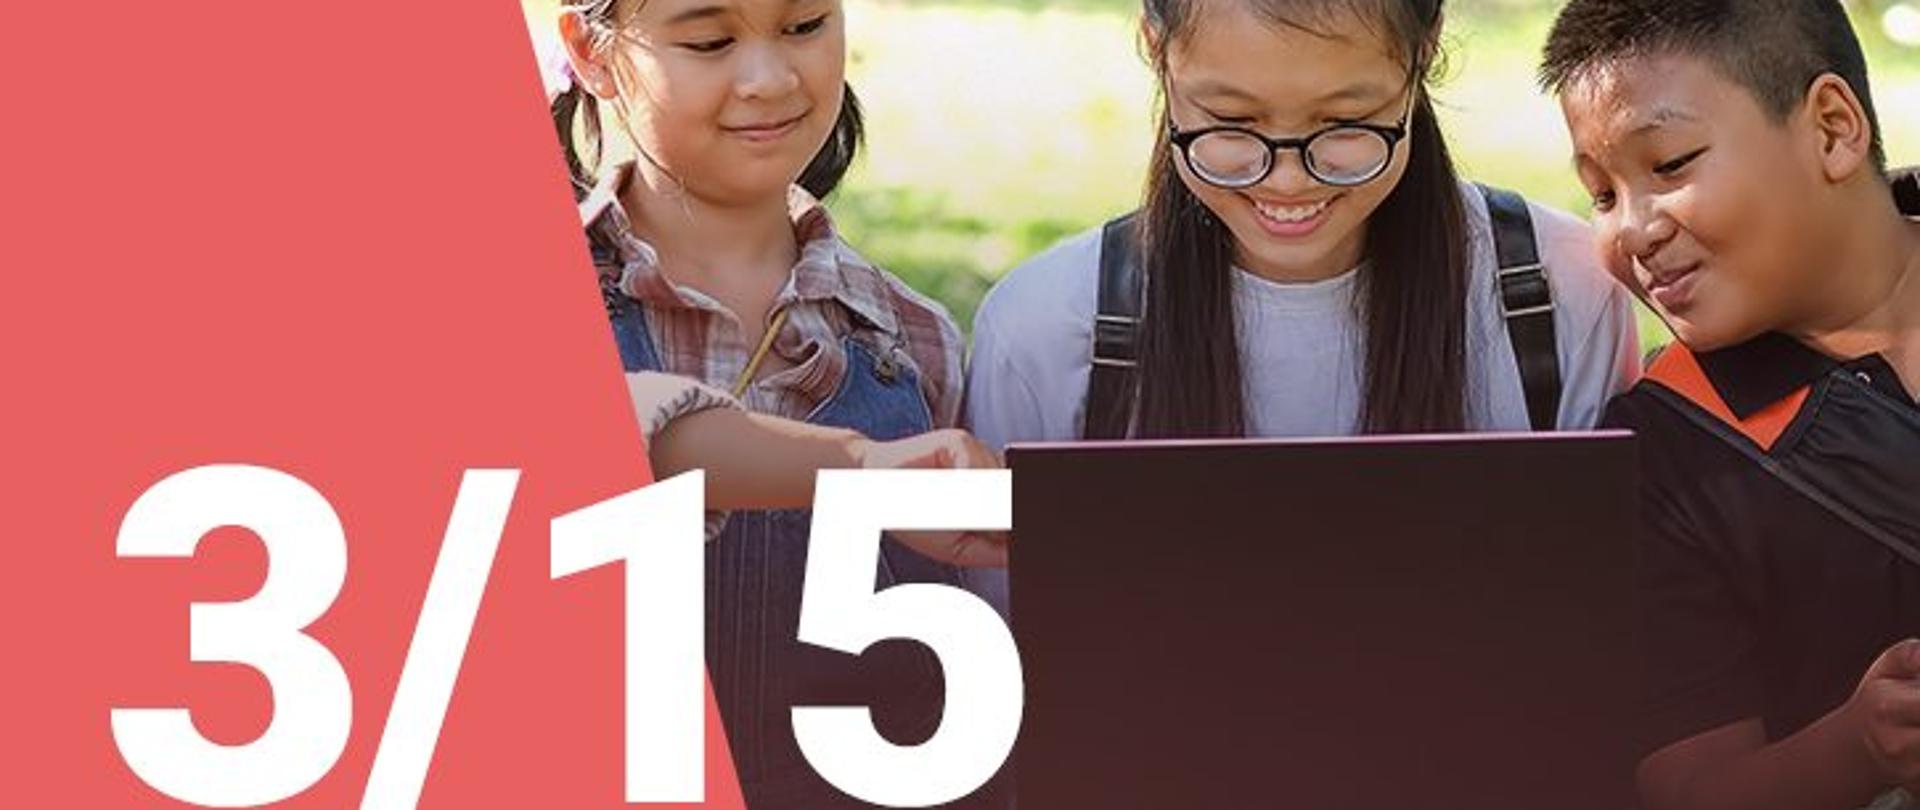 
Na zdjęciu widzimy dwie dziewczynki oraz chłopca patrzących z uśmiechem na ekran laptopa. W dolnym lewym roku widoczna jest numeracja zdjęcia (3/15) 